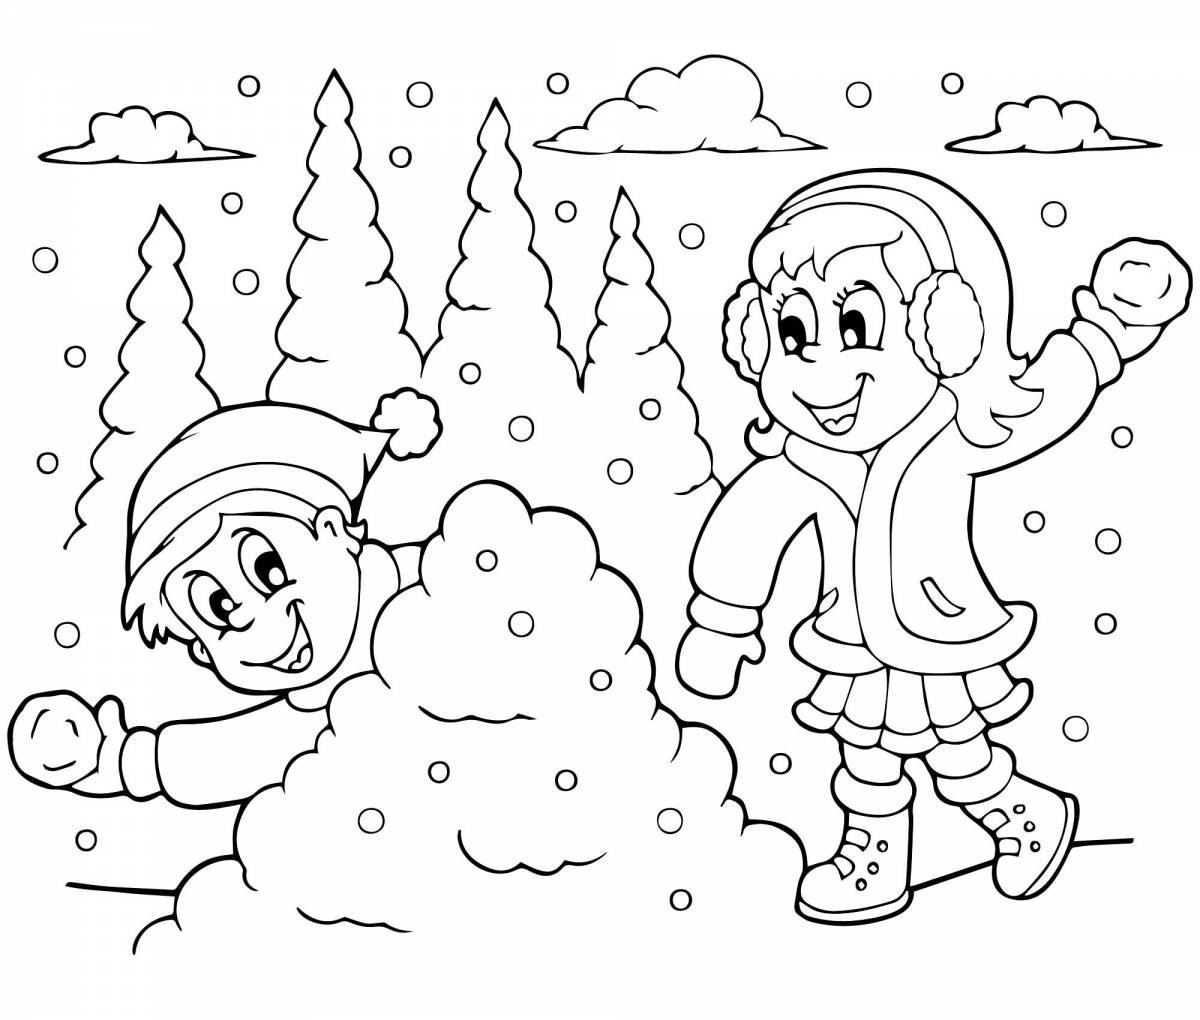 Радостная раскраска зима для детей 5-6 лет